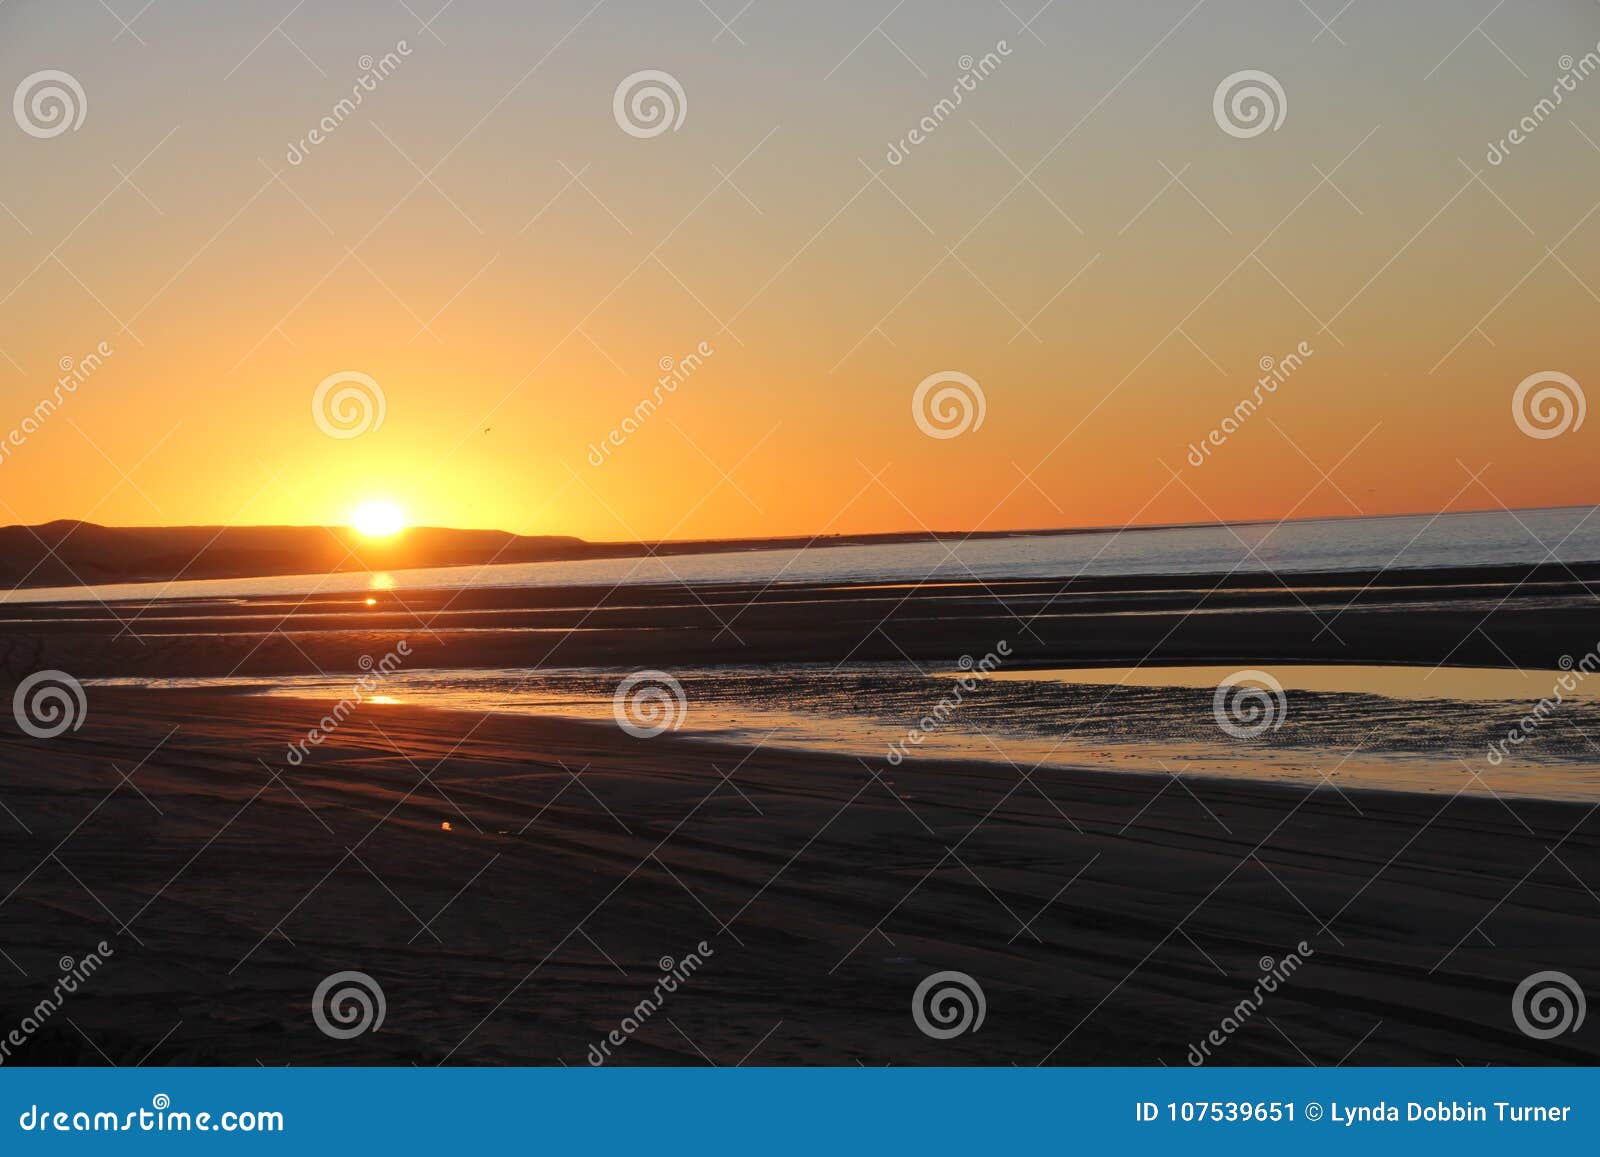 sunrise over the sea of cortez, el golfo, mexico